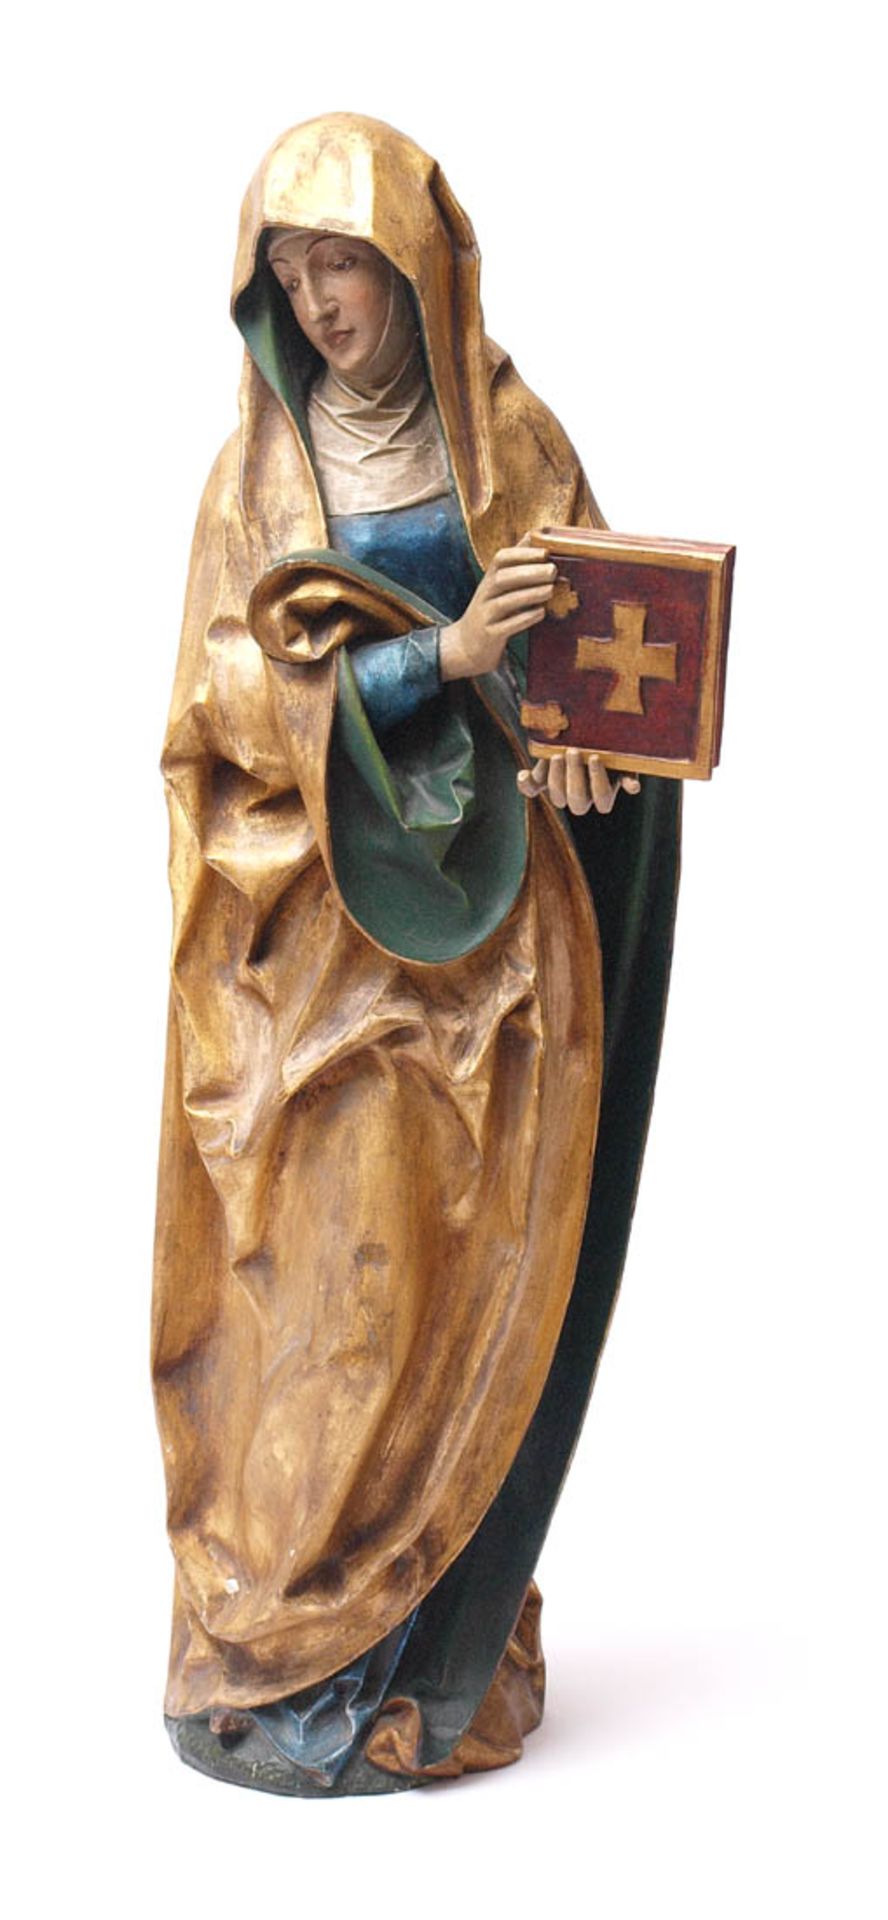 HeiligenfigurStehende Heilige, in ihren Händen eine Bibel haltend. Lindenholz, geschnitzt, farbig